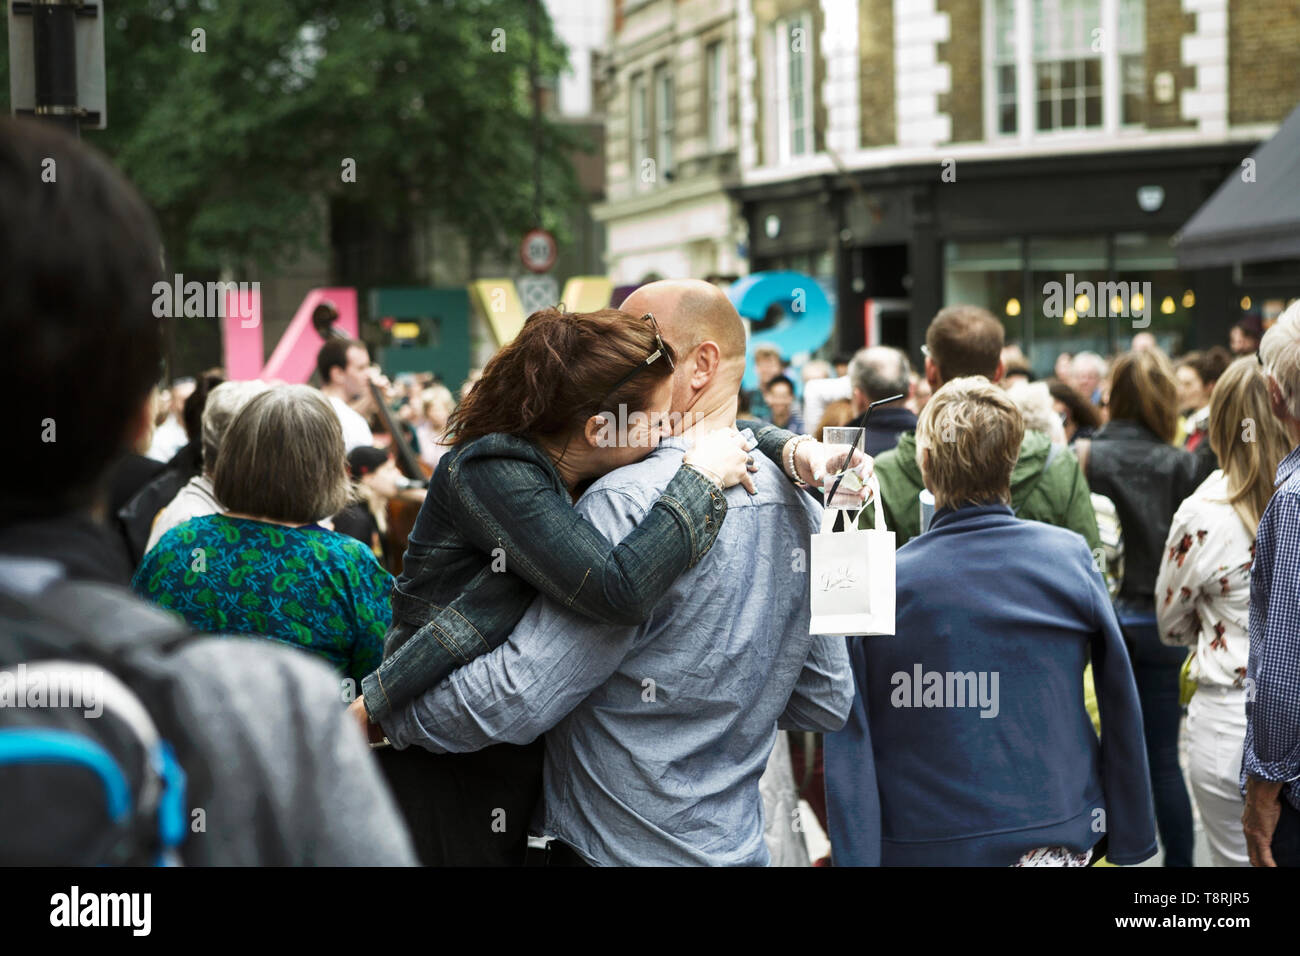 Par afectuoso abrazo en un grupo de personas. El afecto humano. Las emociones humanas. Escena de una calle de Londres. Foto de stock